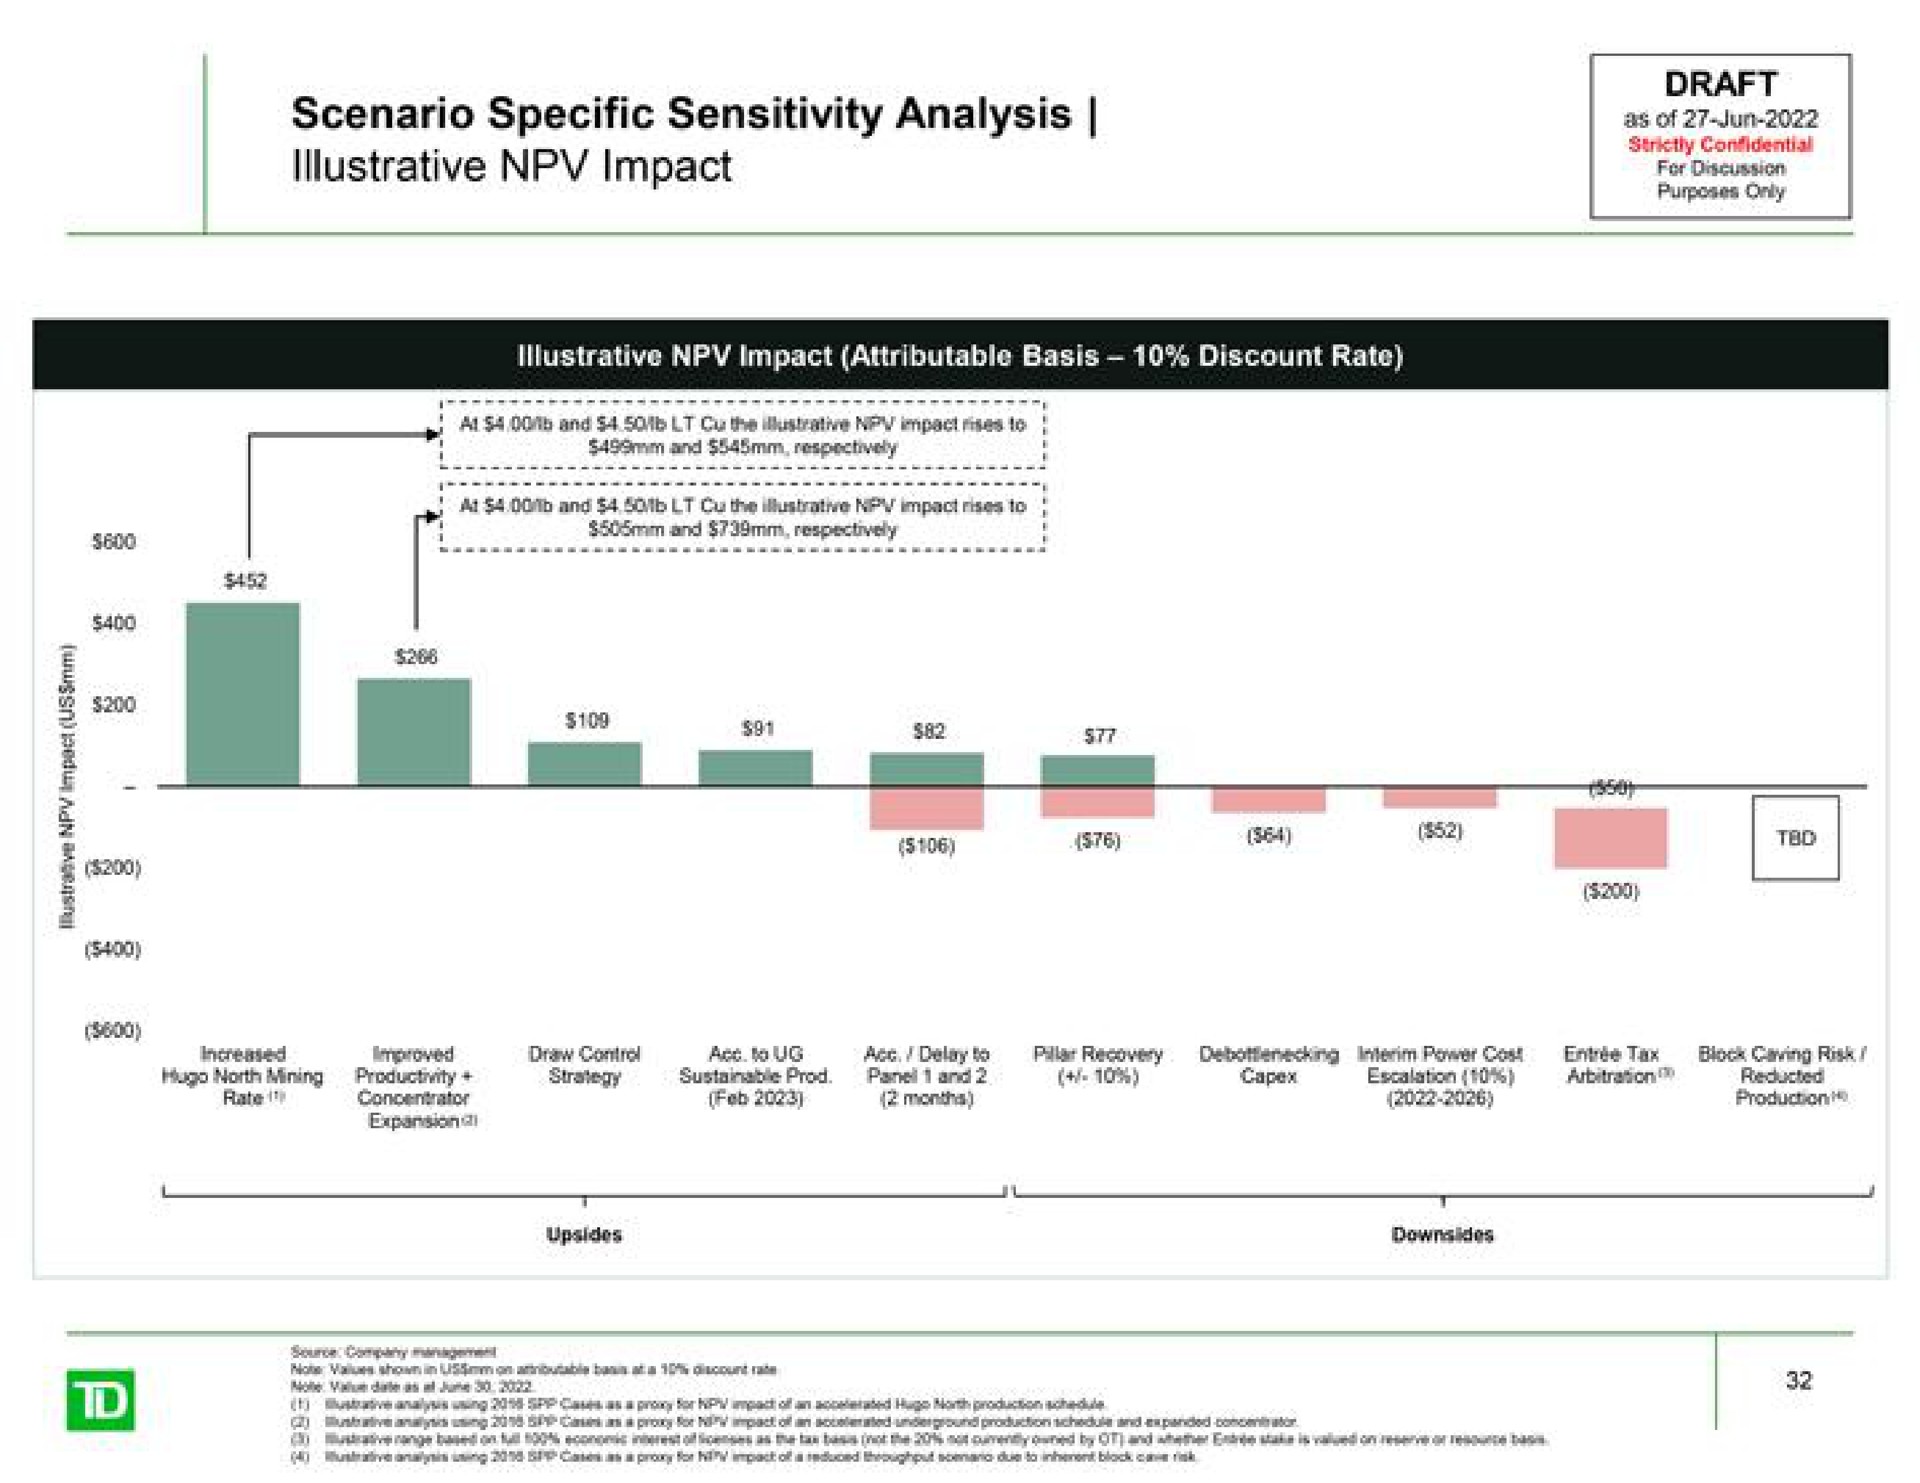 scenario specific sensitivity analysis illustrative impact as of cums | TD Securities